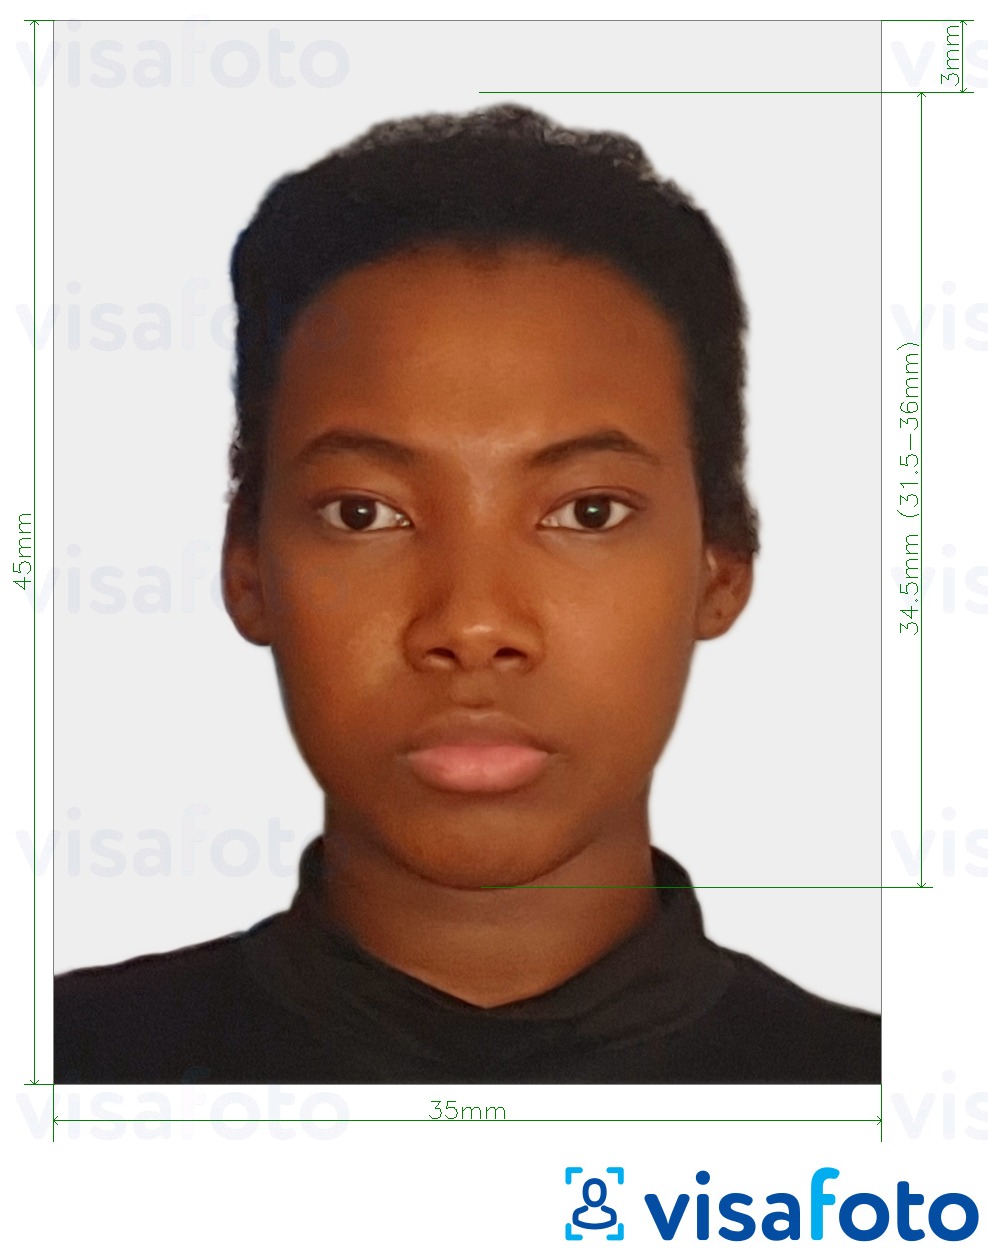 Primjer fotografije za Surinamska viza 45x35 mm (1,77x1,37 inča) s točno određenom veličinom